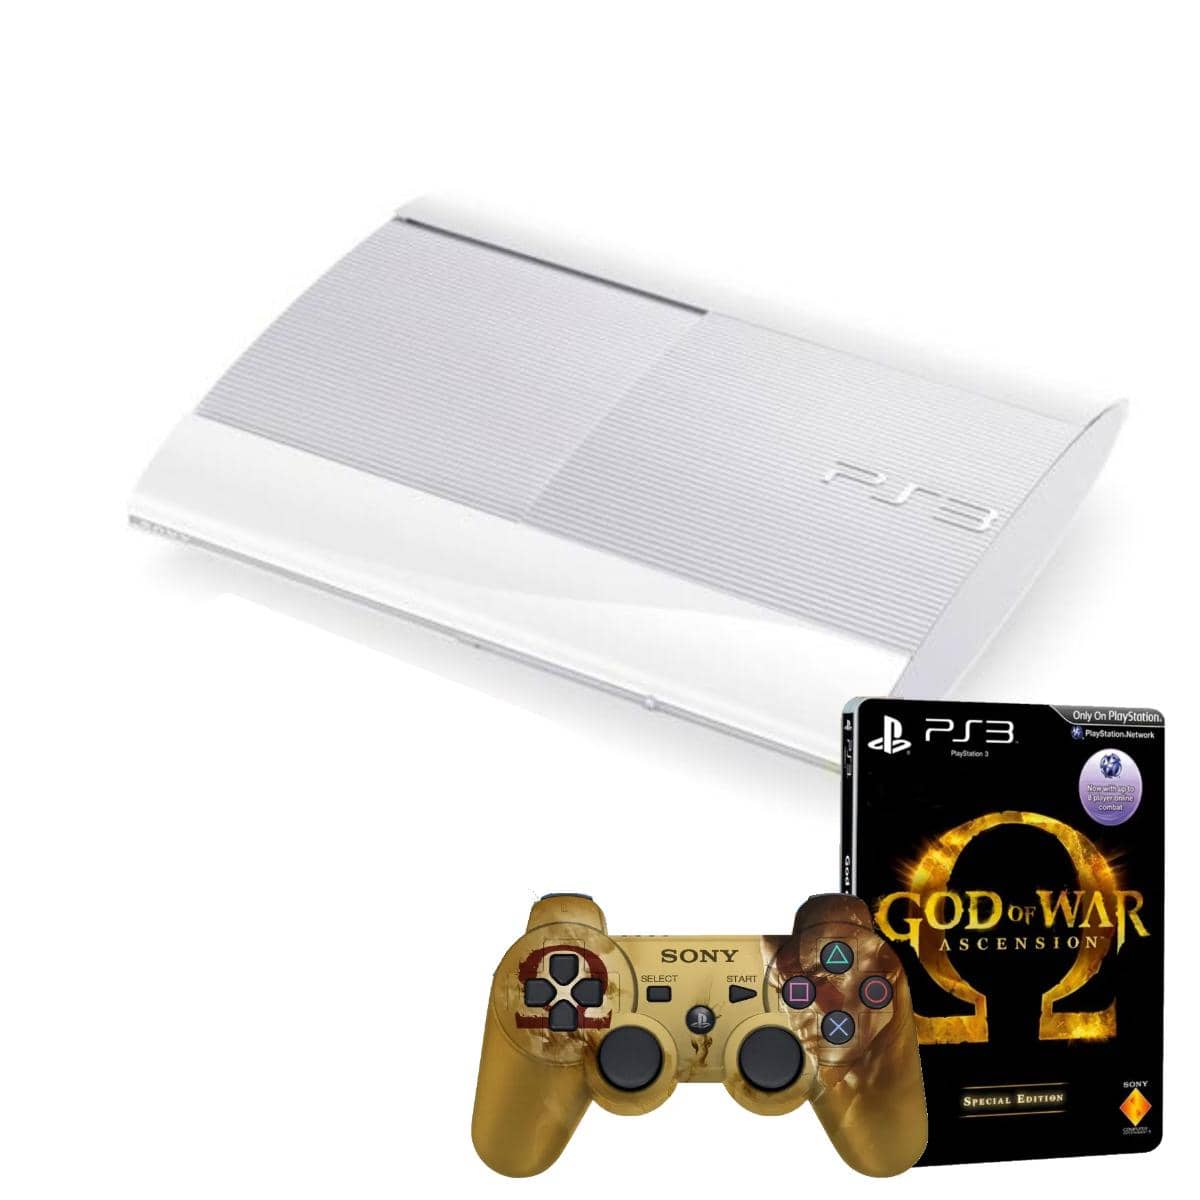 Playstation 3 Super Slim God of War Ascension Bundle 500GB (Begagnad)